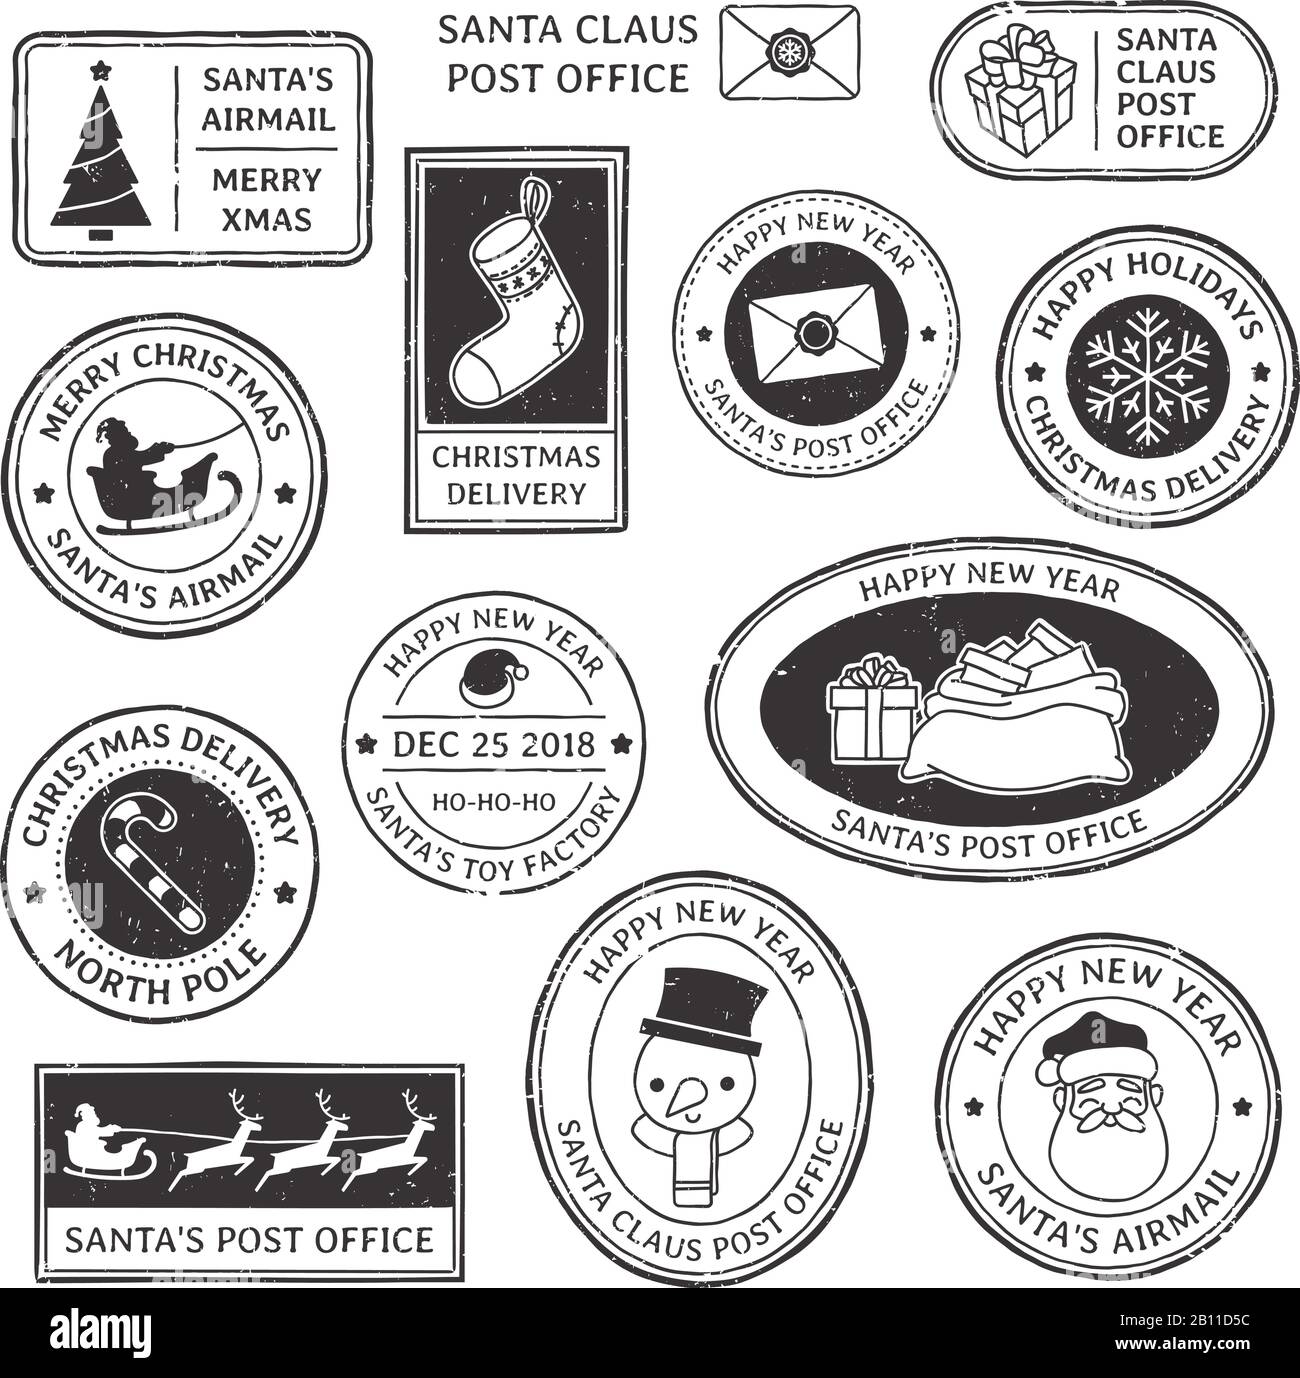 Timbre de Noël. Vintage Santa Claus postmark, pôle nord mail cachet et flocon de neige symbole sur les timbres vecteur illustration set Illustration de Vecteur